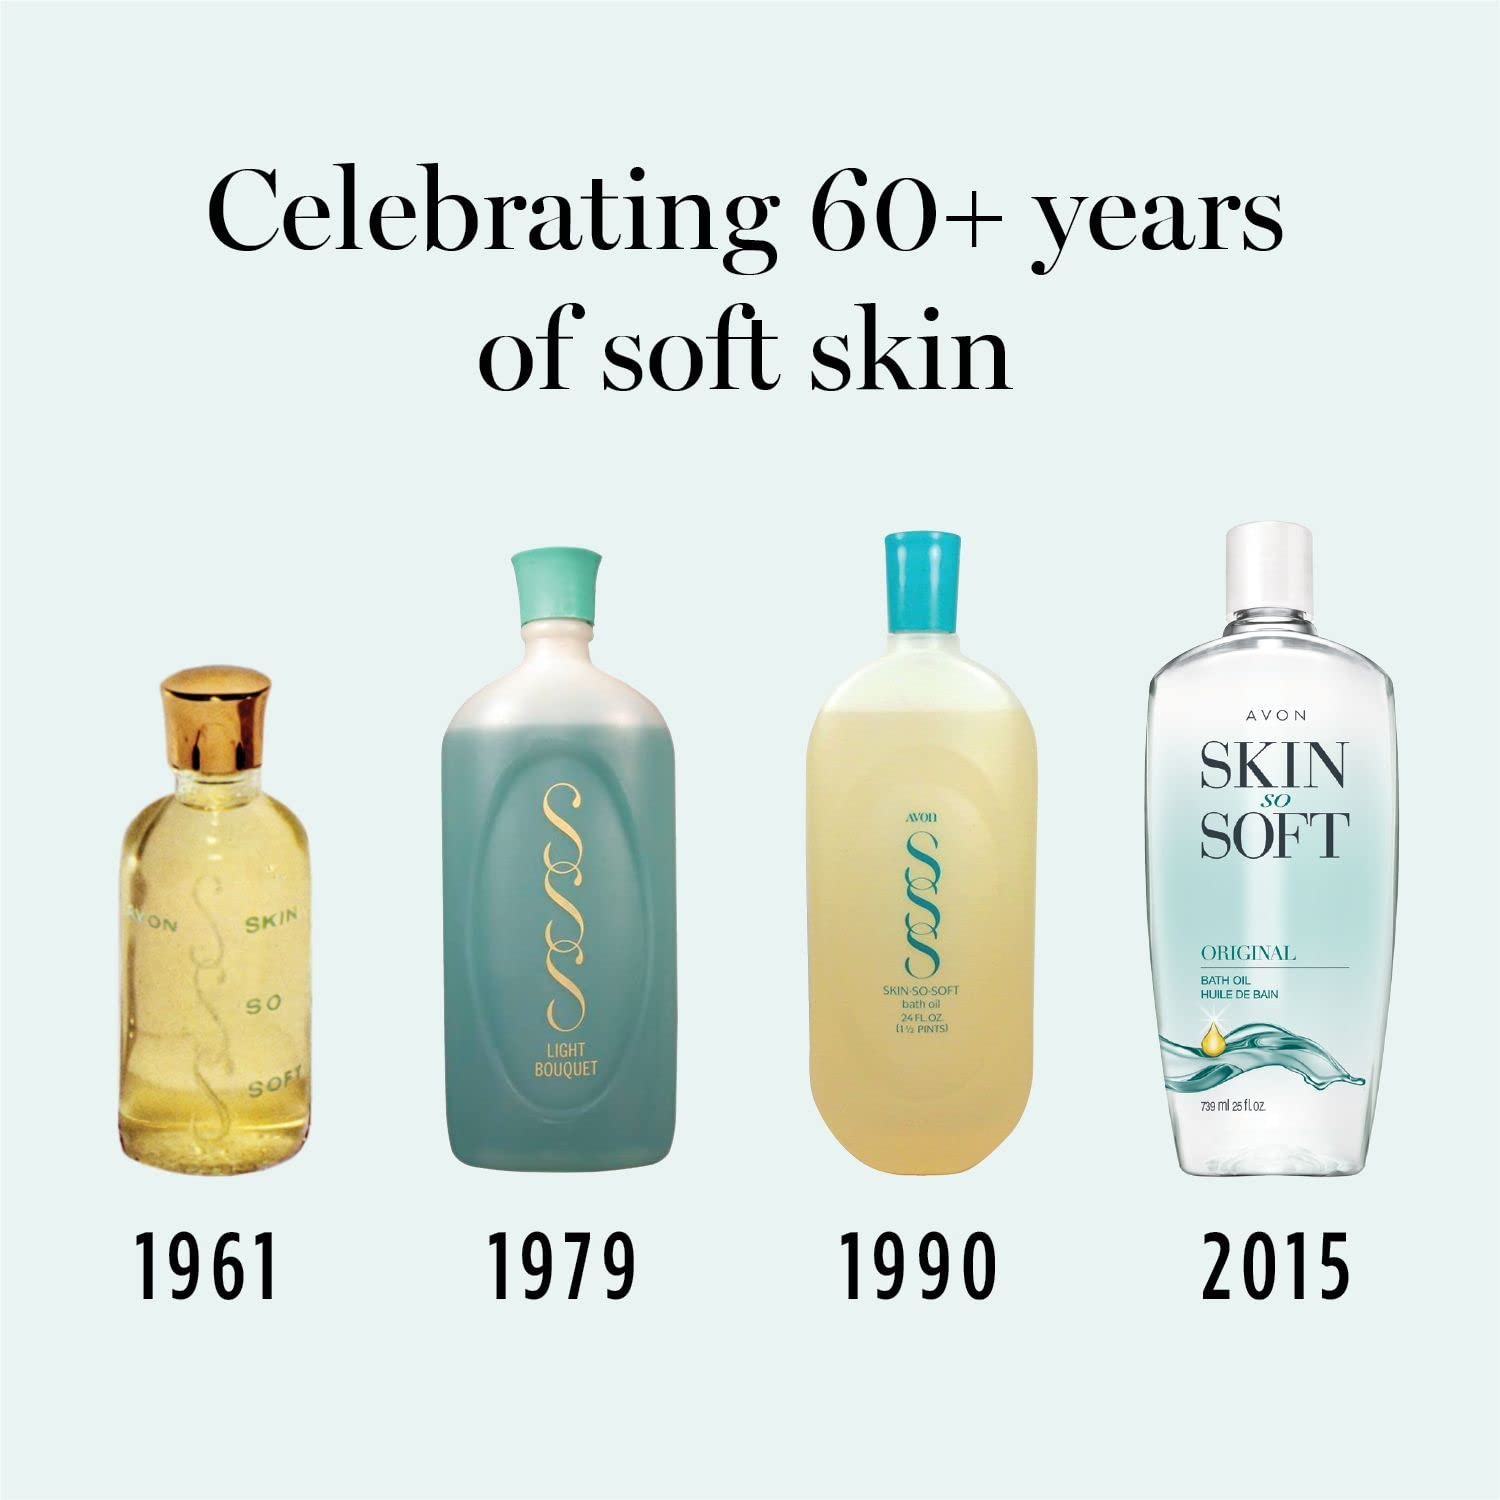 Avon Skin So Soft Original Bath Oil Spray with Pump - 5 Fl Oz - Avon Skin So Soft Bath Oil with Pump - 1 Pack